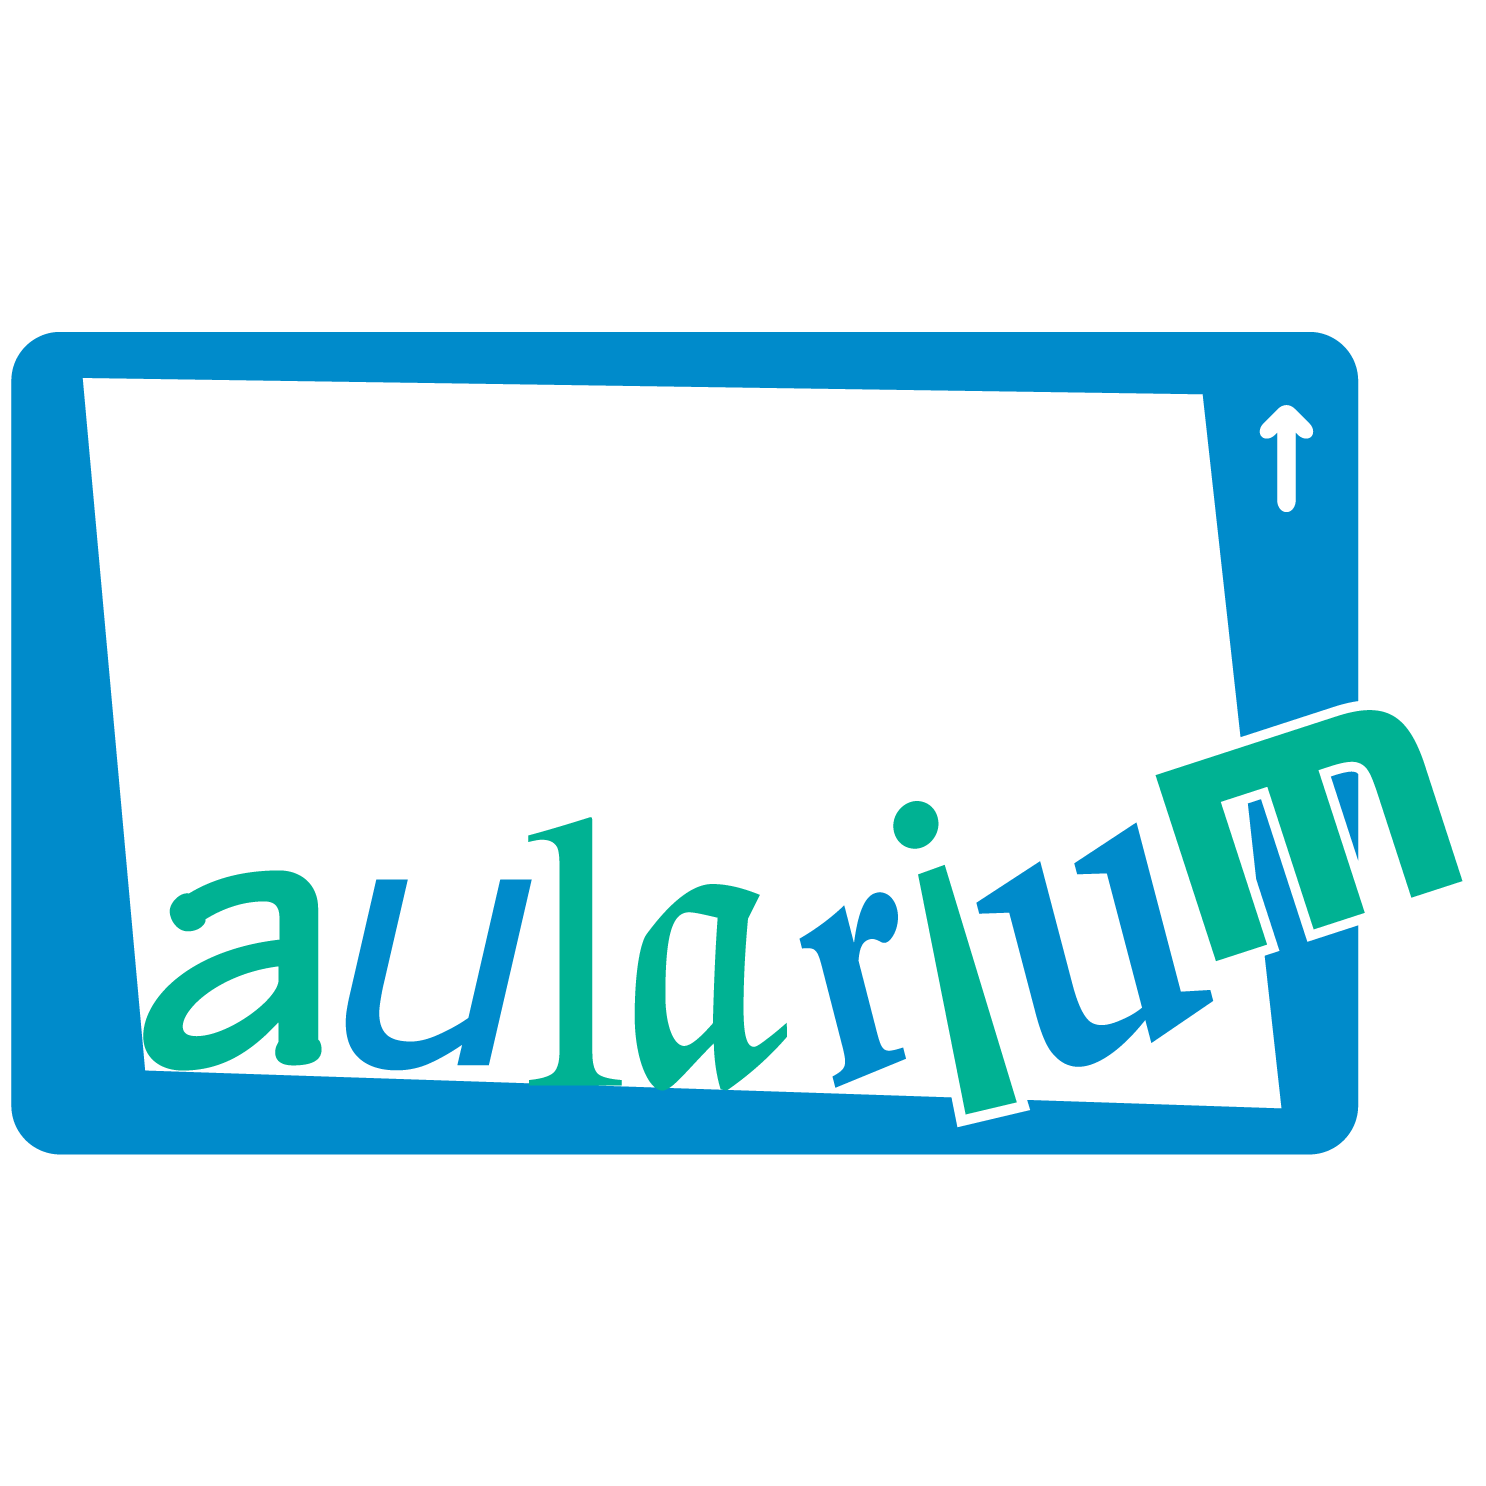 Aularium